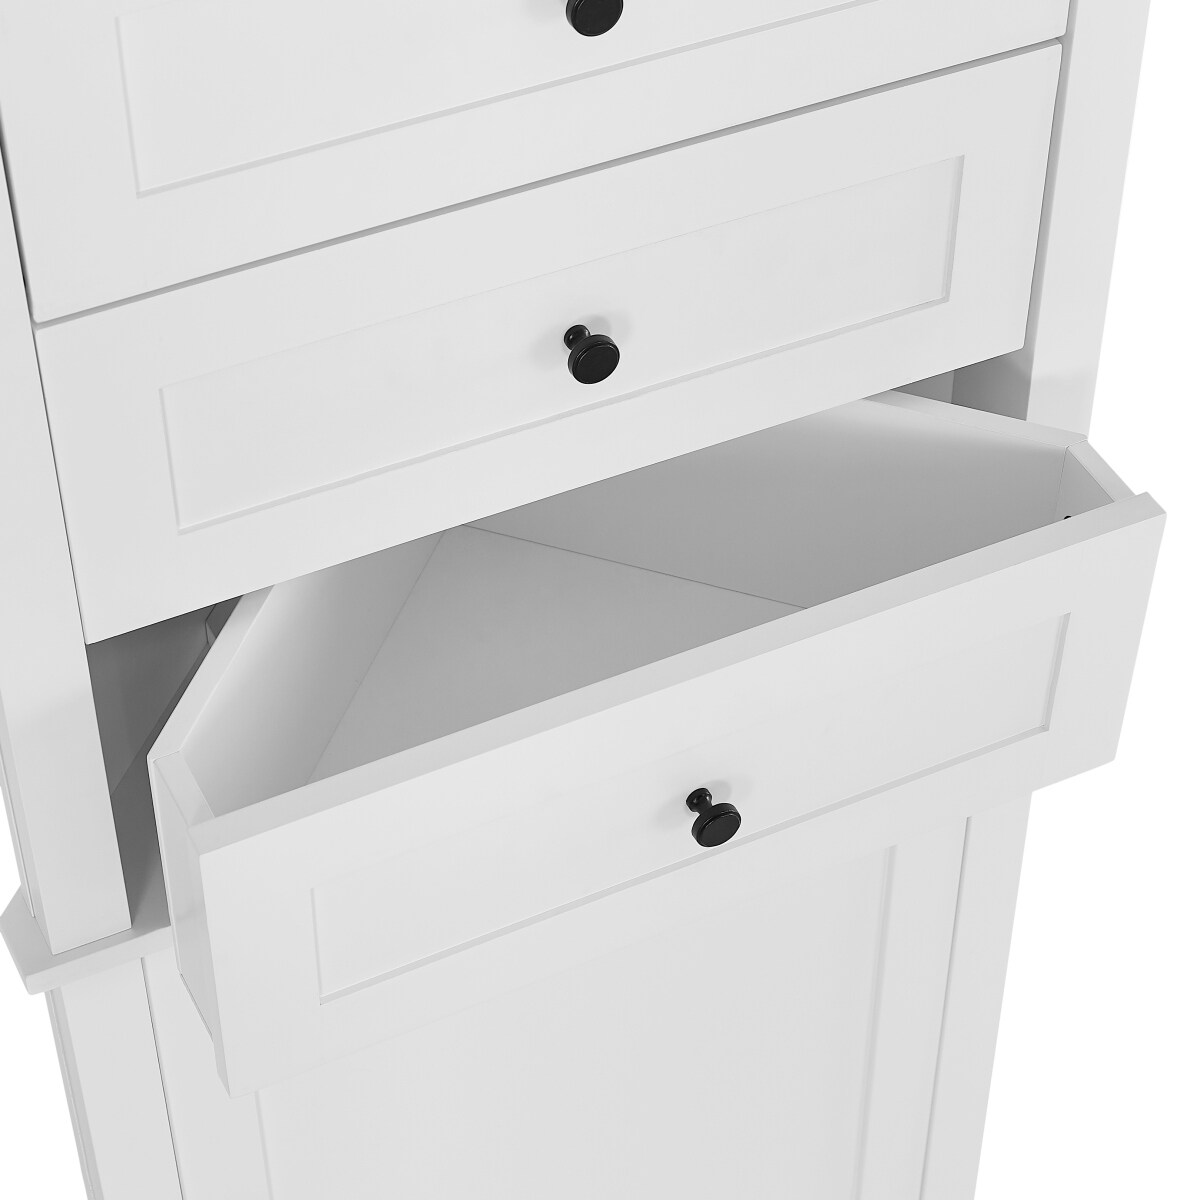 Bathroom Storage Corner Cabinet with Adjustable Shelves - Bed Bath & Beyond  - 36661995